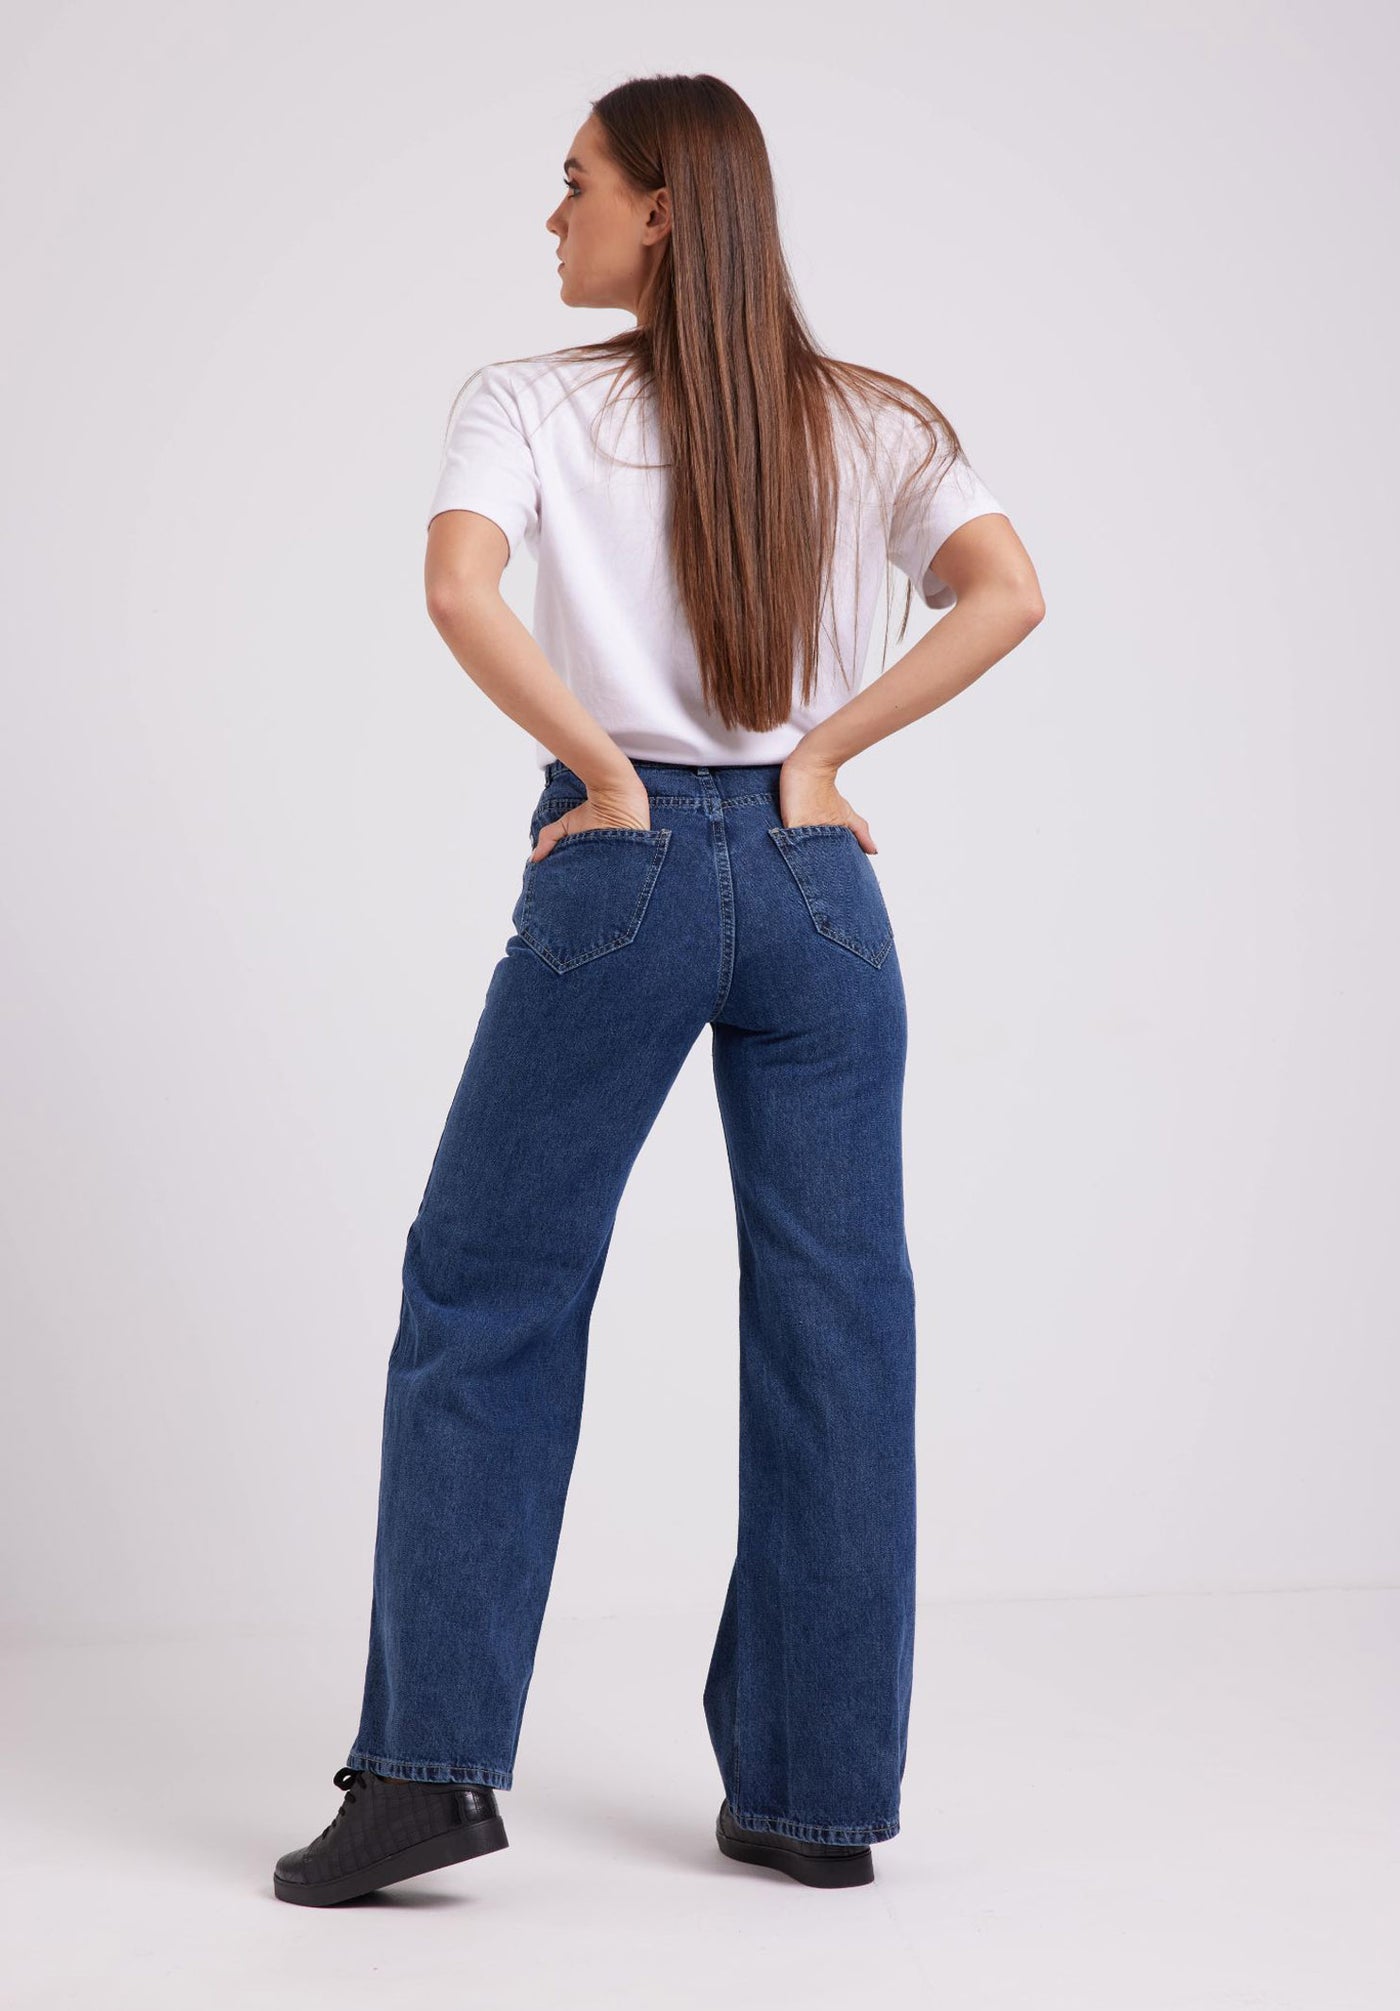 Jeans Pants - Mid Rise - Wide Leg - Blue